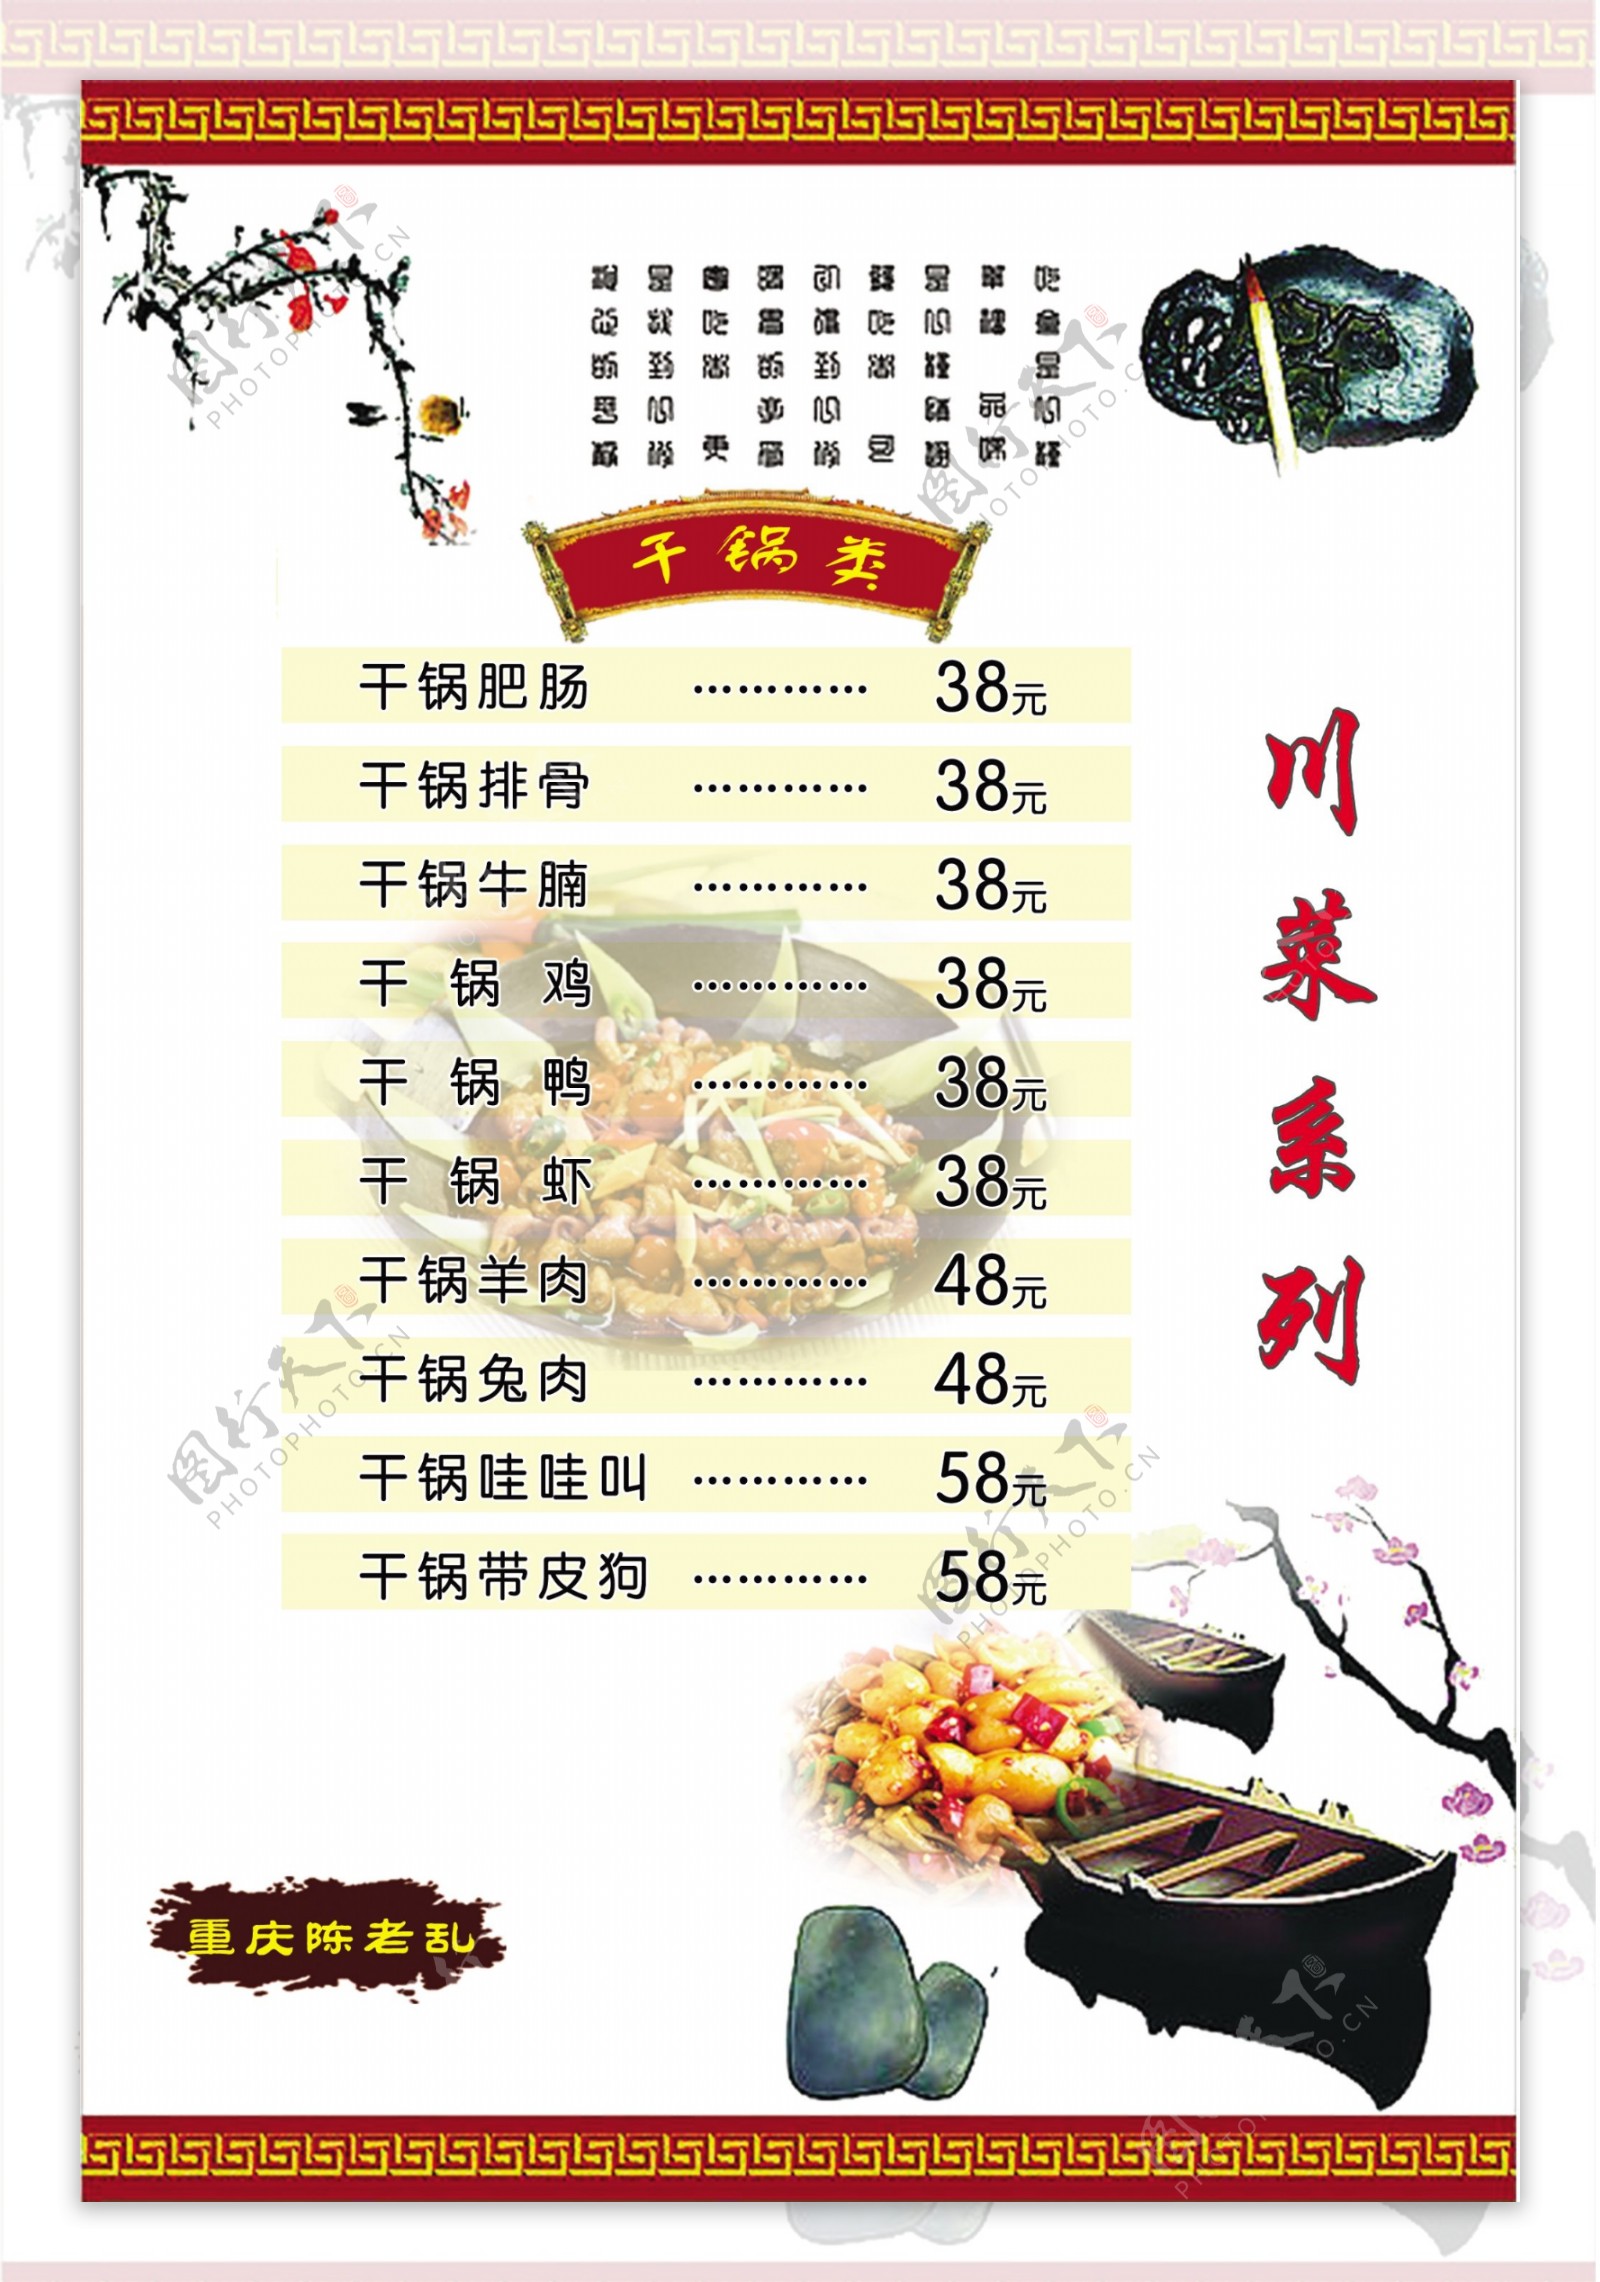 川菜系列菜单图片